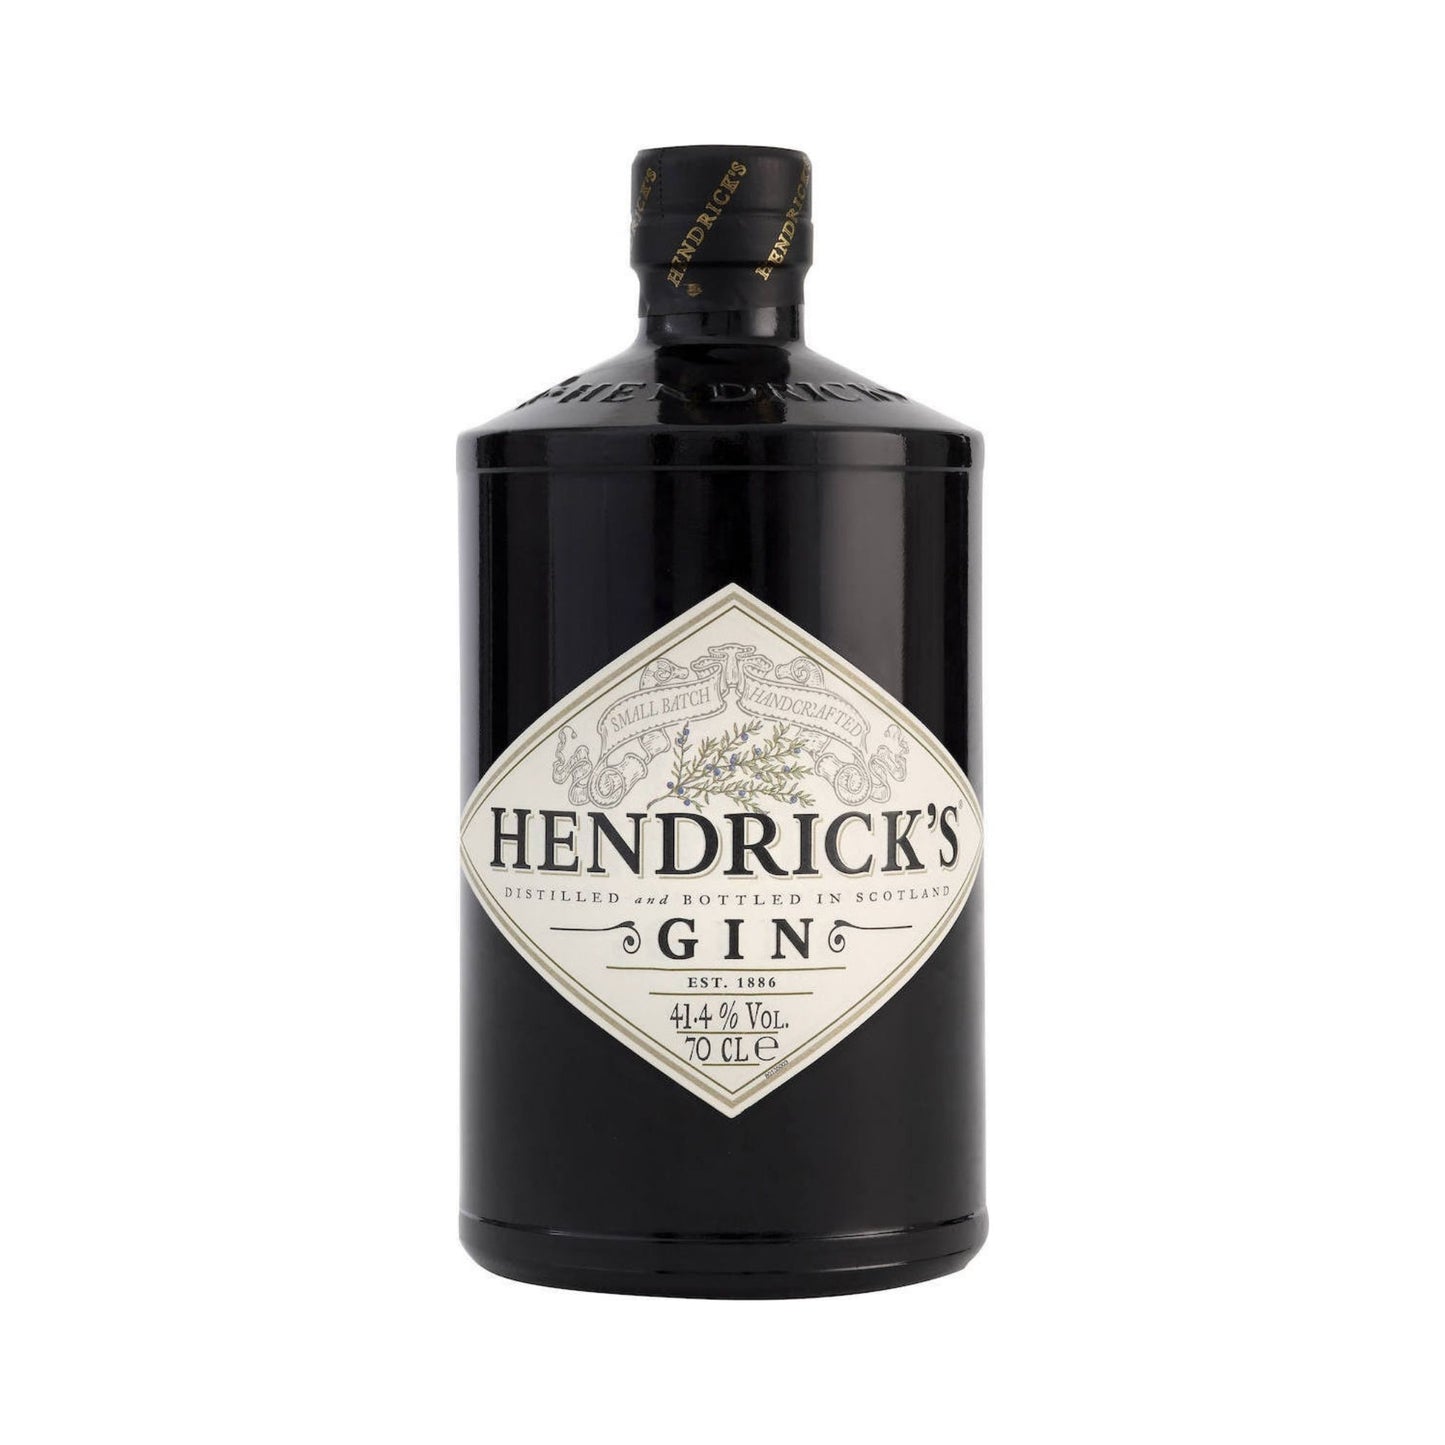 HENDRICK'S GIN 0.7LT